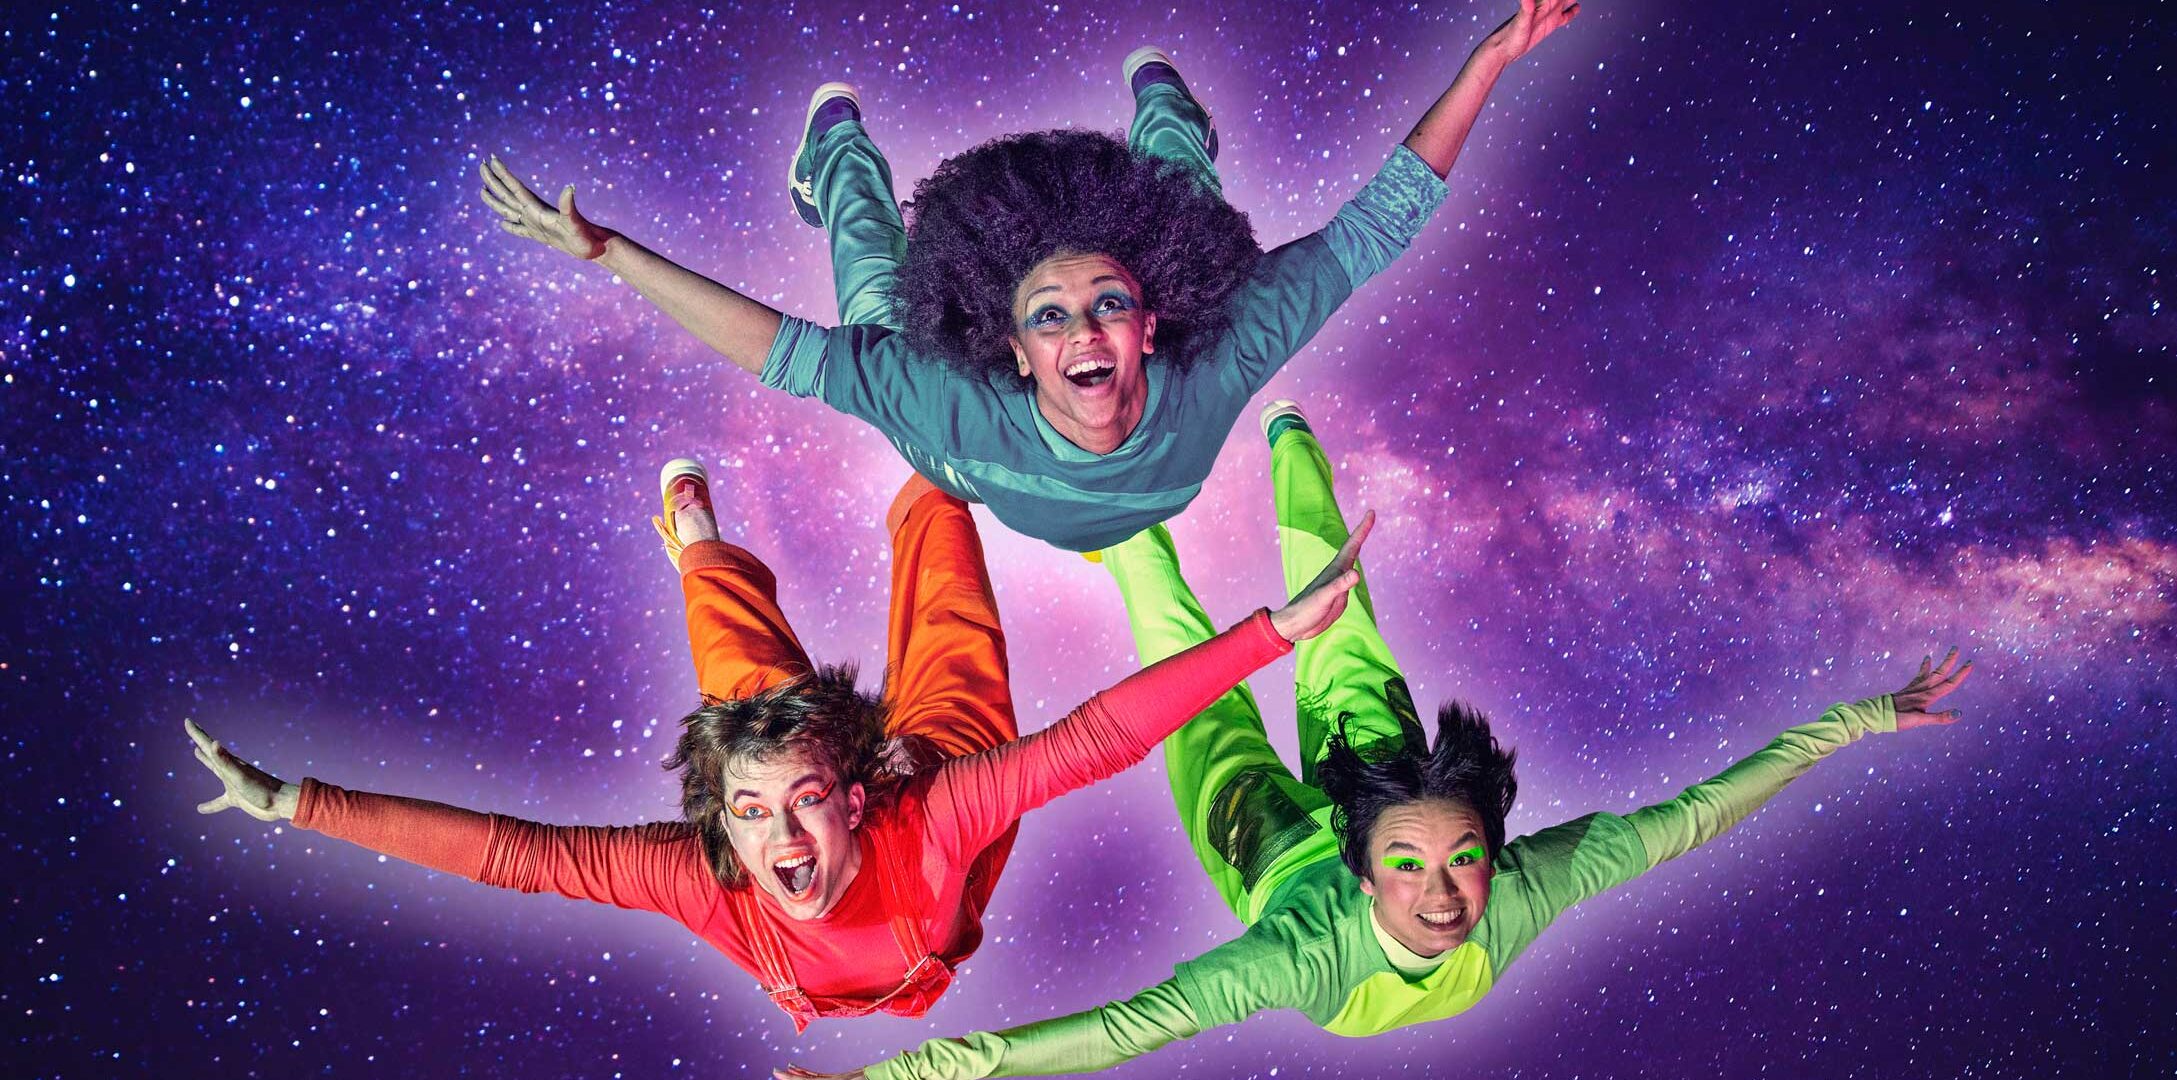 Kolme tanssijaa värikkäissä vaatteissa lentää kohti kameraa, taustalla avaruus.